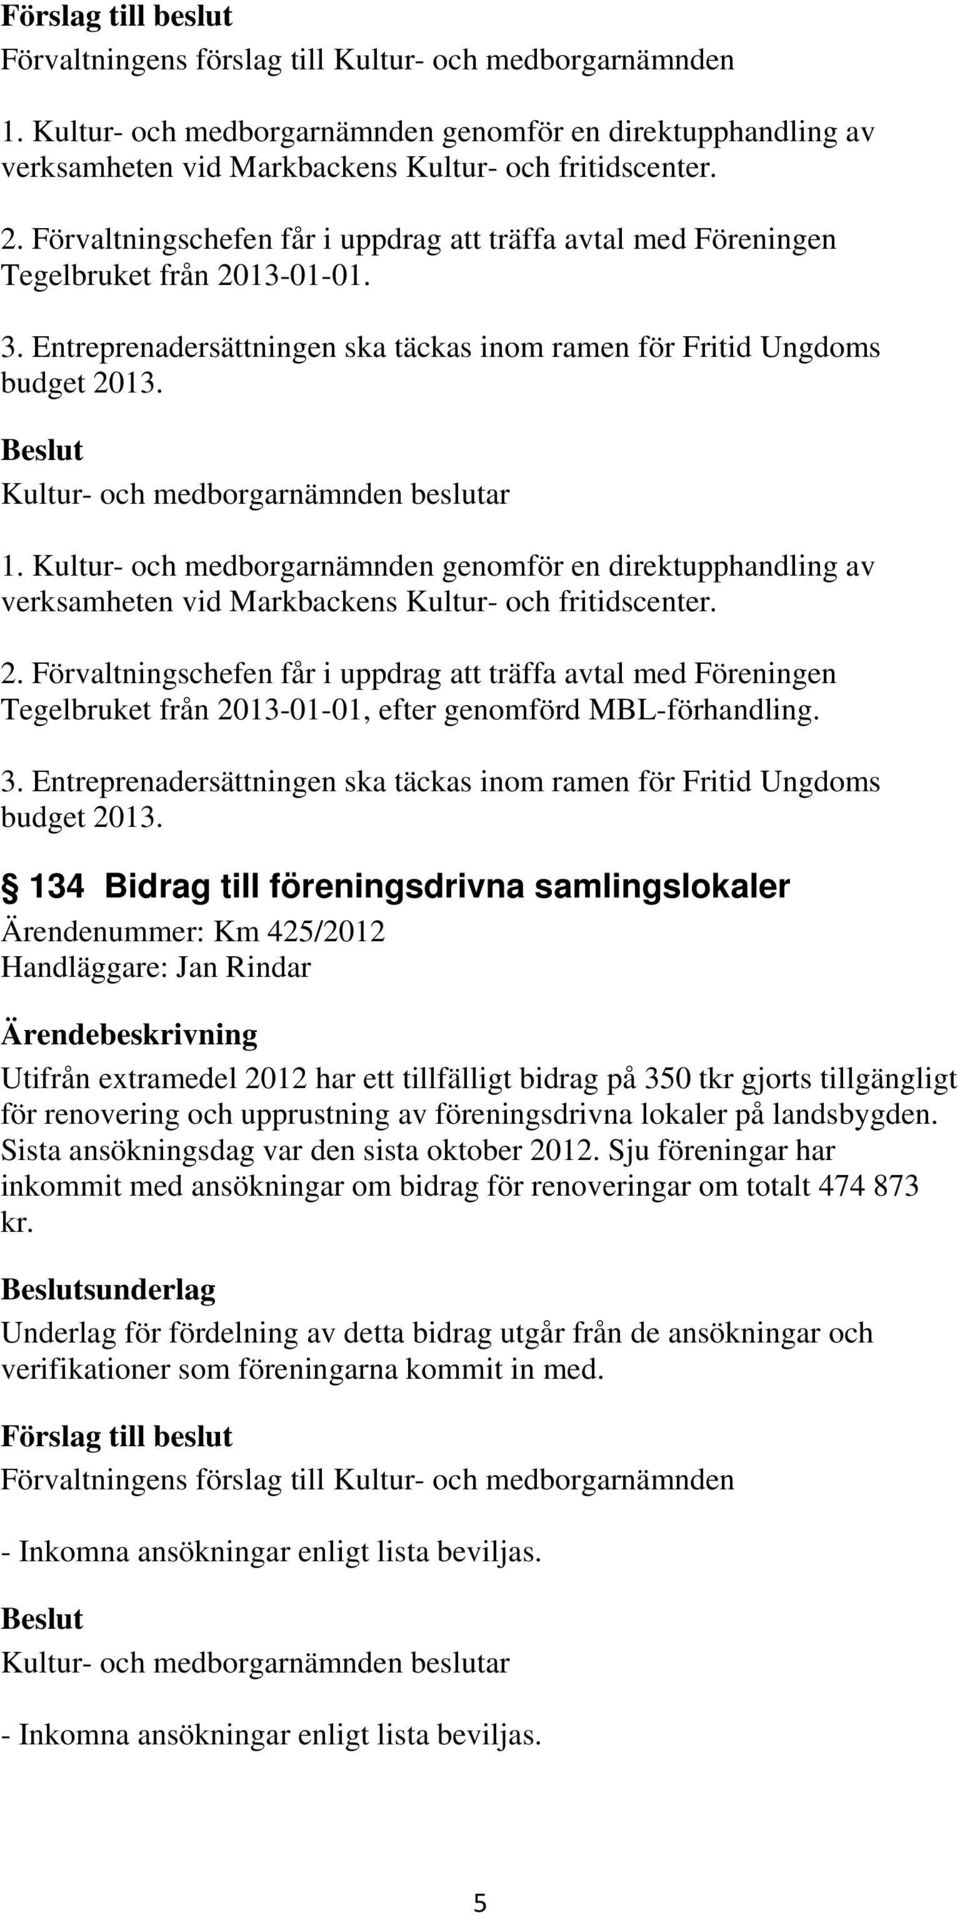 Förvaltningschefen får i uppdrag att träffa avtal med Föreningen Tegelbruket från 2013-01-01, efter genomförd MBL-förhandling. 3.